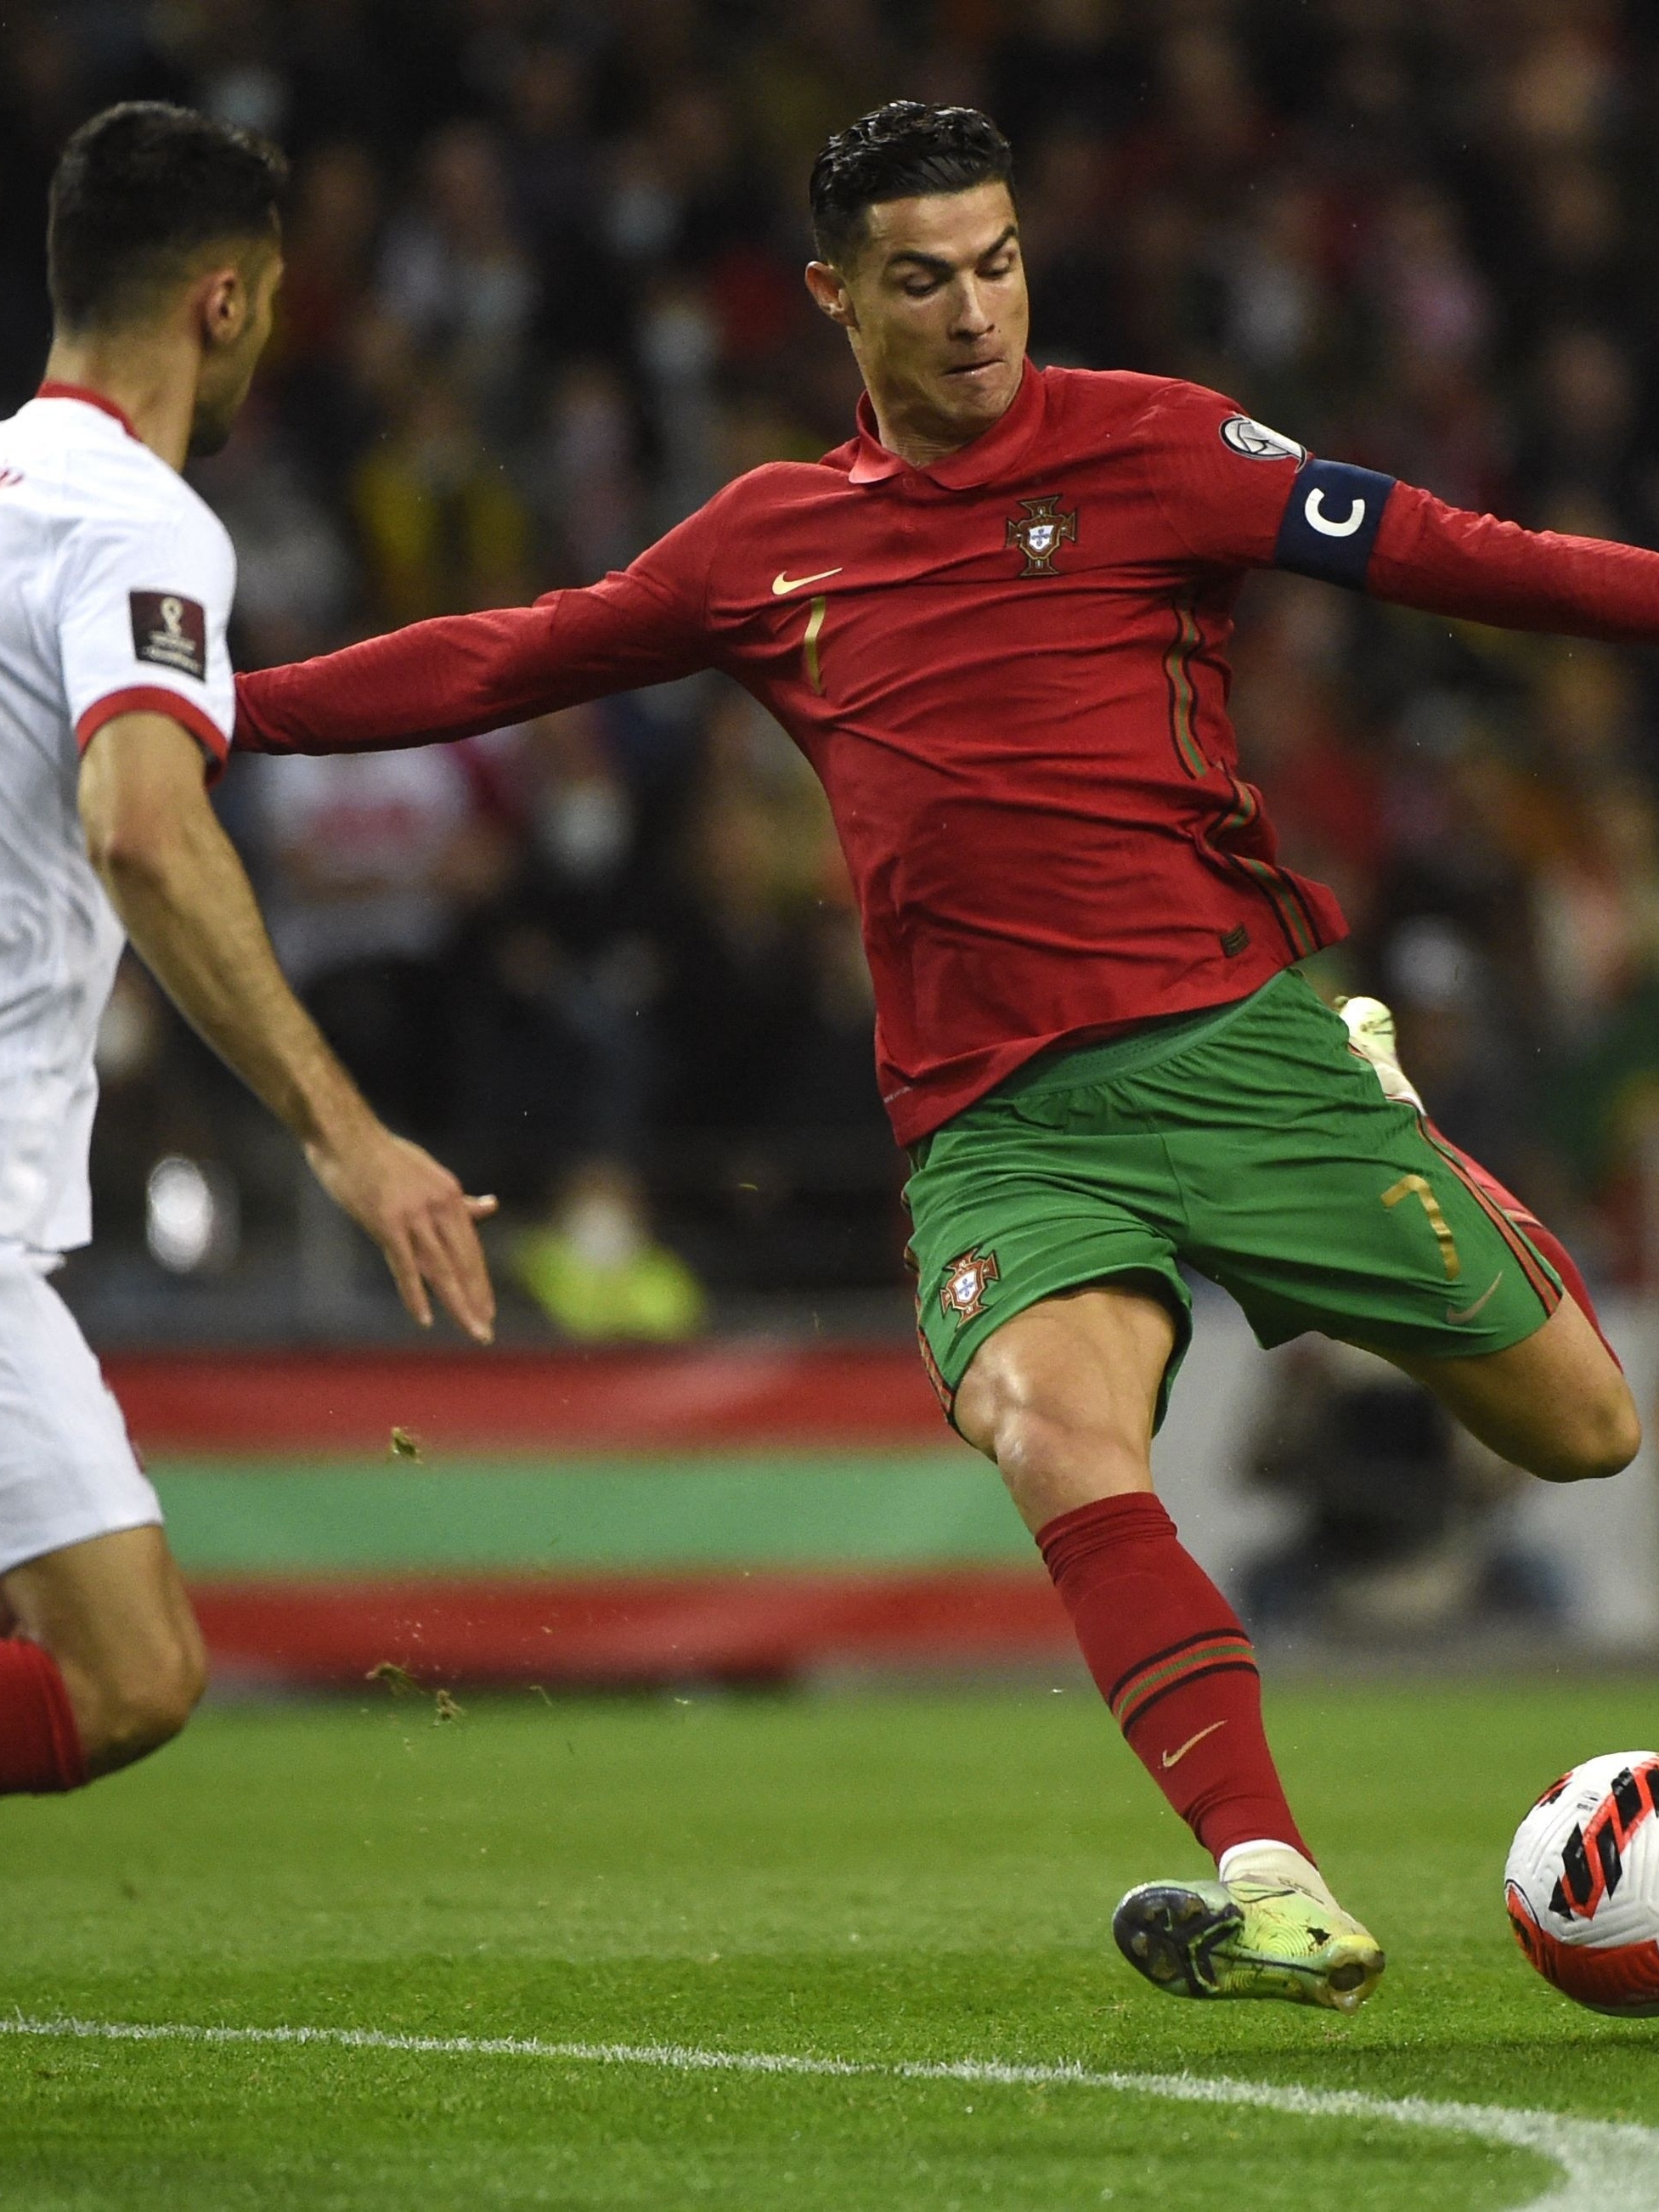 Fifa define jogos da repescagem da Copa do Mundo de 2022; Itália e Portugal  disputam uma vaga - Jogada - Diário do Nordeste